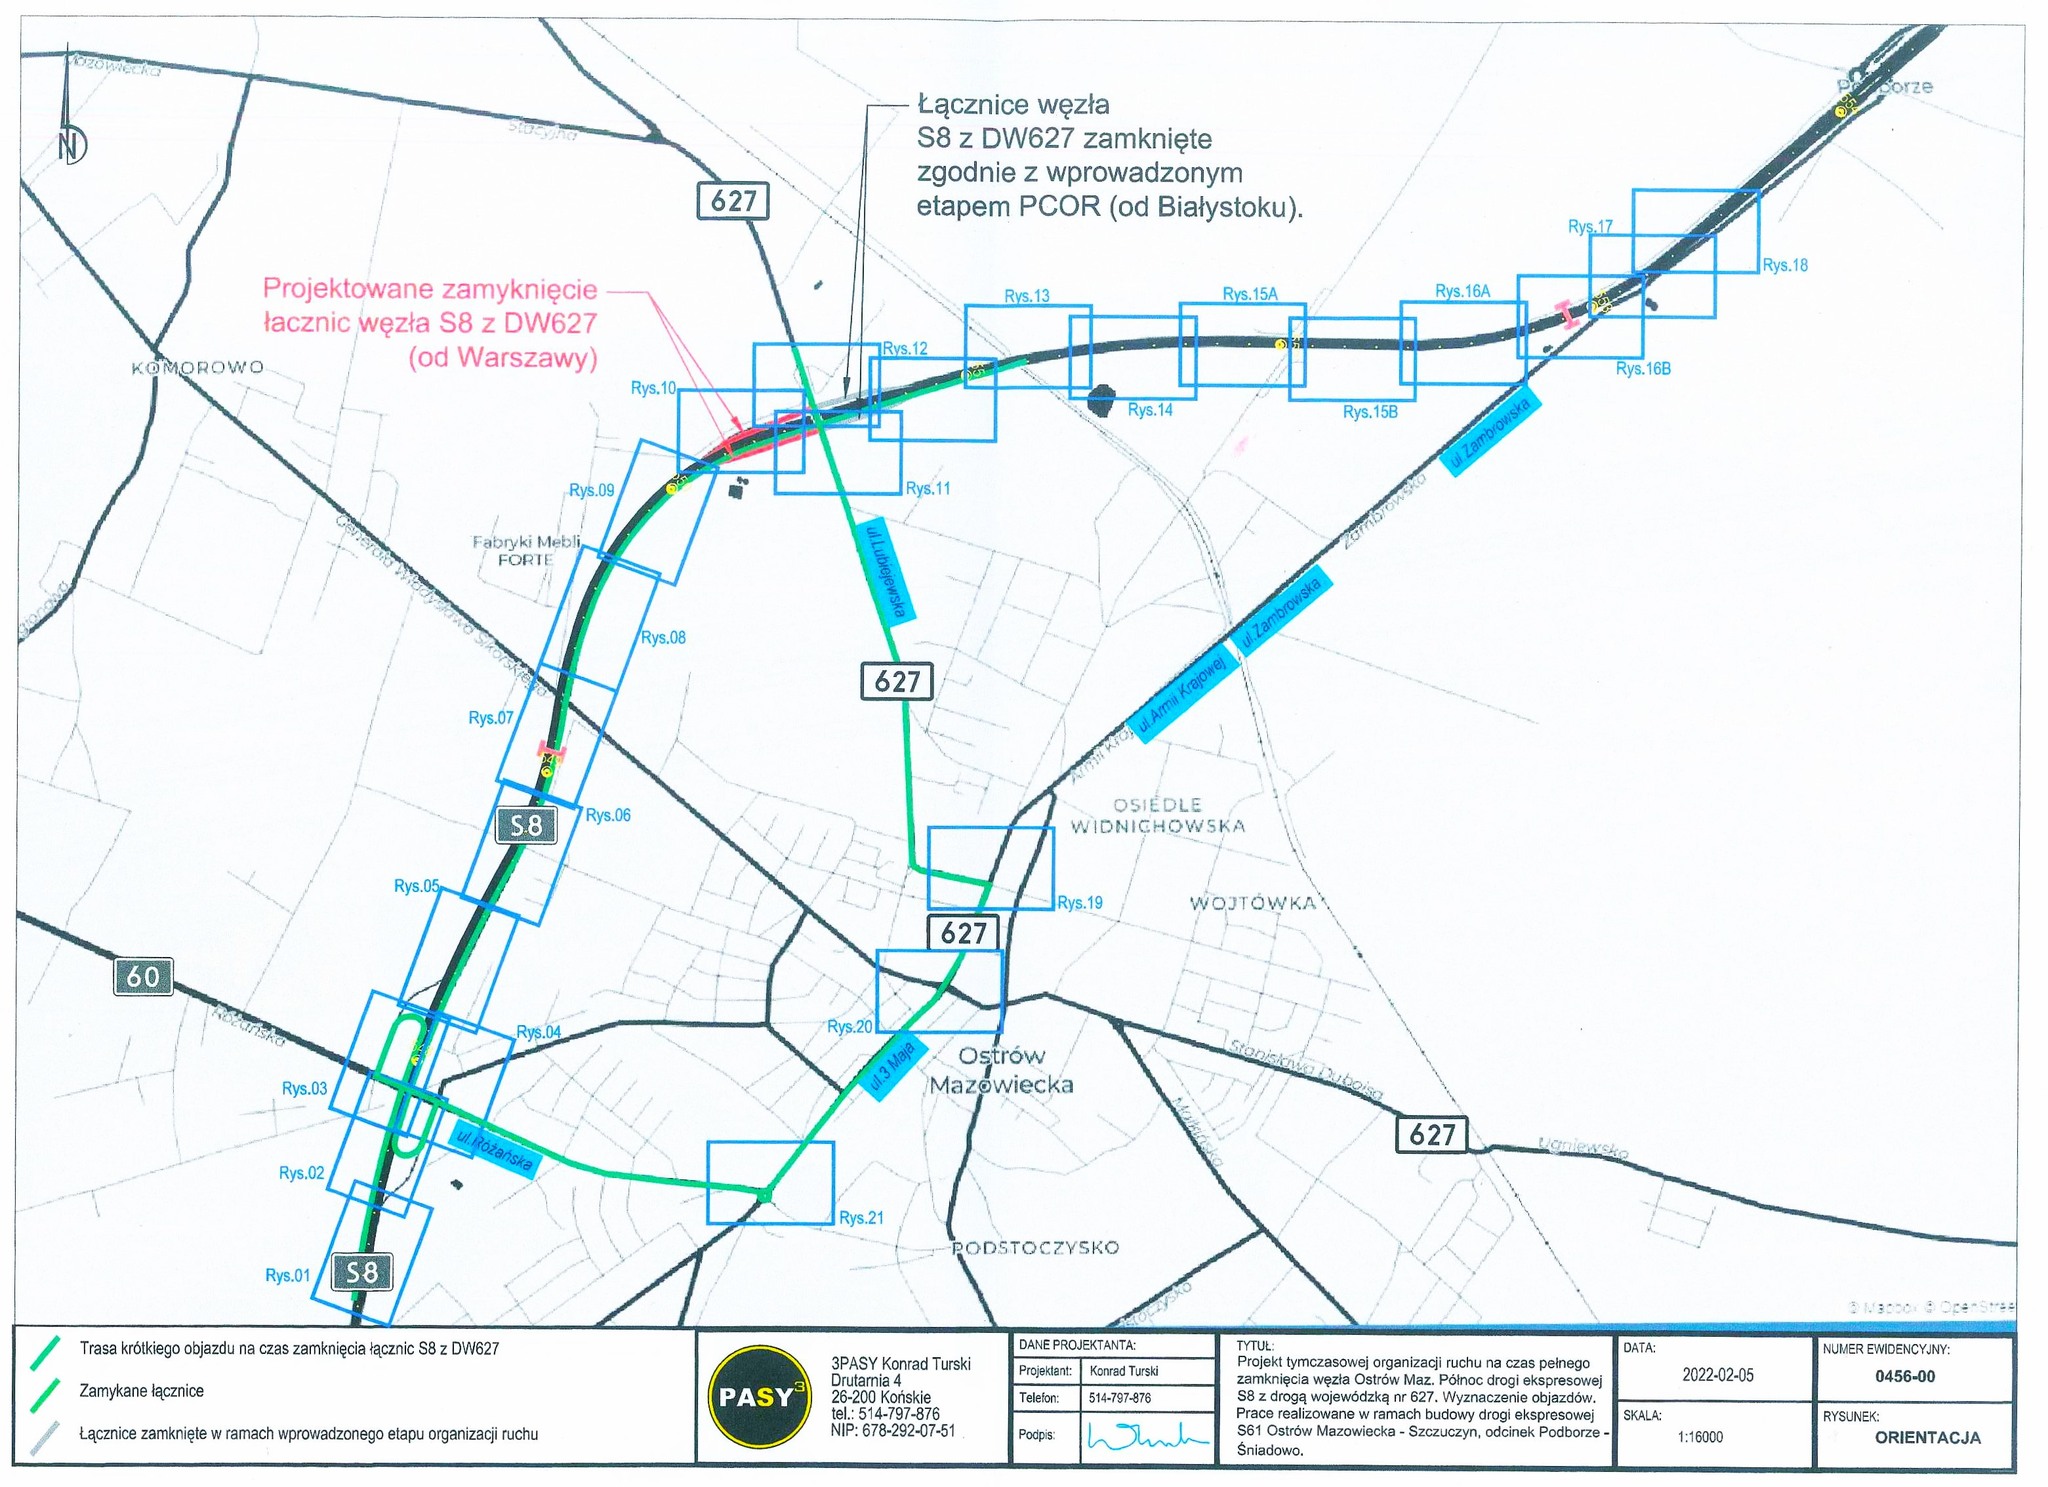 Mapa pokazująca zamknięcie trasy ostrów mazowiecka północ9 sierpnia węzeł OM Północ zostanie zamknięty ostatecznie, a jego rolę przejmie węzeł Ostrów Mazowiecka Południe. Nowy węzeł zlokalizowany będzie na skrzyżowaniu z drogą ekspresową S8 Sąsiedni węzeł Podborze na S8 zostanie zlikwidowany.  Do czasu zakończenia budowy, ruch lokalny obsługiwać będzie węzeł Ostrów Mazowiecka Południe (ul. Różańska). Dla ruchu tranzytowego zalecane są objazdy: Różan – Ostrołęka (drogami DK60 i DK61)  Zambrów - Łomża (drogami S8 i DK63).  Zmiana lokalizacji węzła umożliwi wjazd z drogi wojewódzkiej nr 627 na drogi S8 i S61. W budowie jest także ponad 3,5 km drogi wojewódzkiej nr 627 od drogi wojewódzkiej w rejonie miejscowości Stok do węzła Komorowo na drodze S61 Stworzony zostanie węzeł typu WA &quot;koniczyna&quot; z elementami łącznic bezpośrednich. Budowany fragment drogi S8 i S61 będzie miał nawierzchnię asfaltową, przystosowany do najcięższego ruchu (kategoria KR7, nacisk na oś 11,5 t). W ramach umowy powstaną dwie jezdnie S61, po dwa pasy ruchu każda, do tego pas awaryjny i 5-metrowy pas rozdziału. Droga ekspresowa S8 docelowo będzie przebiegać dołem, pod drogą ekspresową S61 Oprócz węzła OM Północ, powstanie jeszcze węzeł Komorowo na skrzyżowaniu z drogą wojewódzką nr 677 (Ostrów Mazowiecka - Łomża), przewidziano też rezerwę terenu pod dwa Miejsca Obsługi Podróżnych (MOP) - Sulęcin Wschód i Zachód.